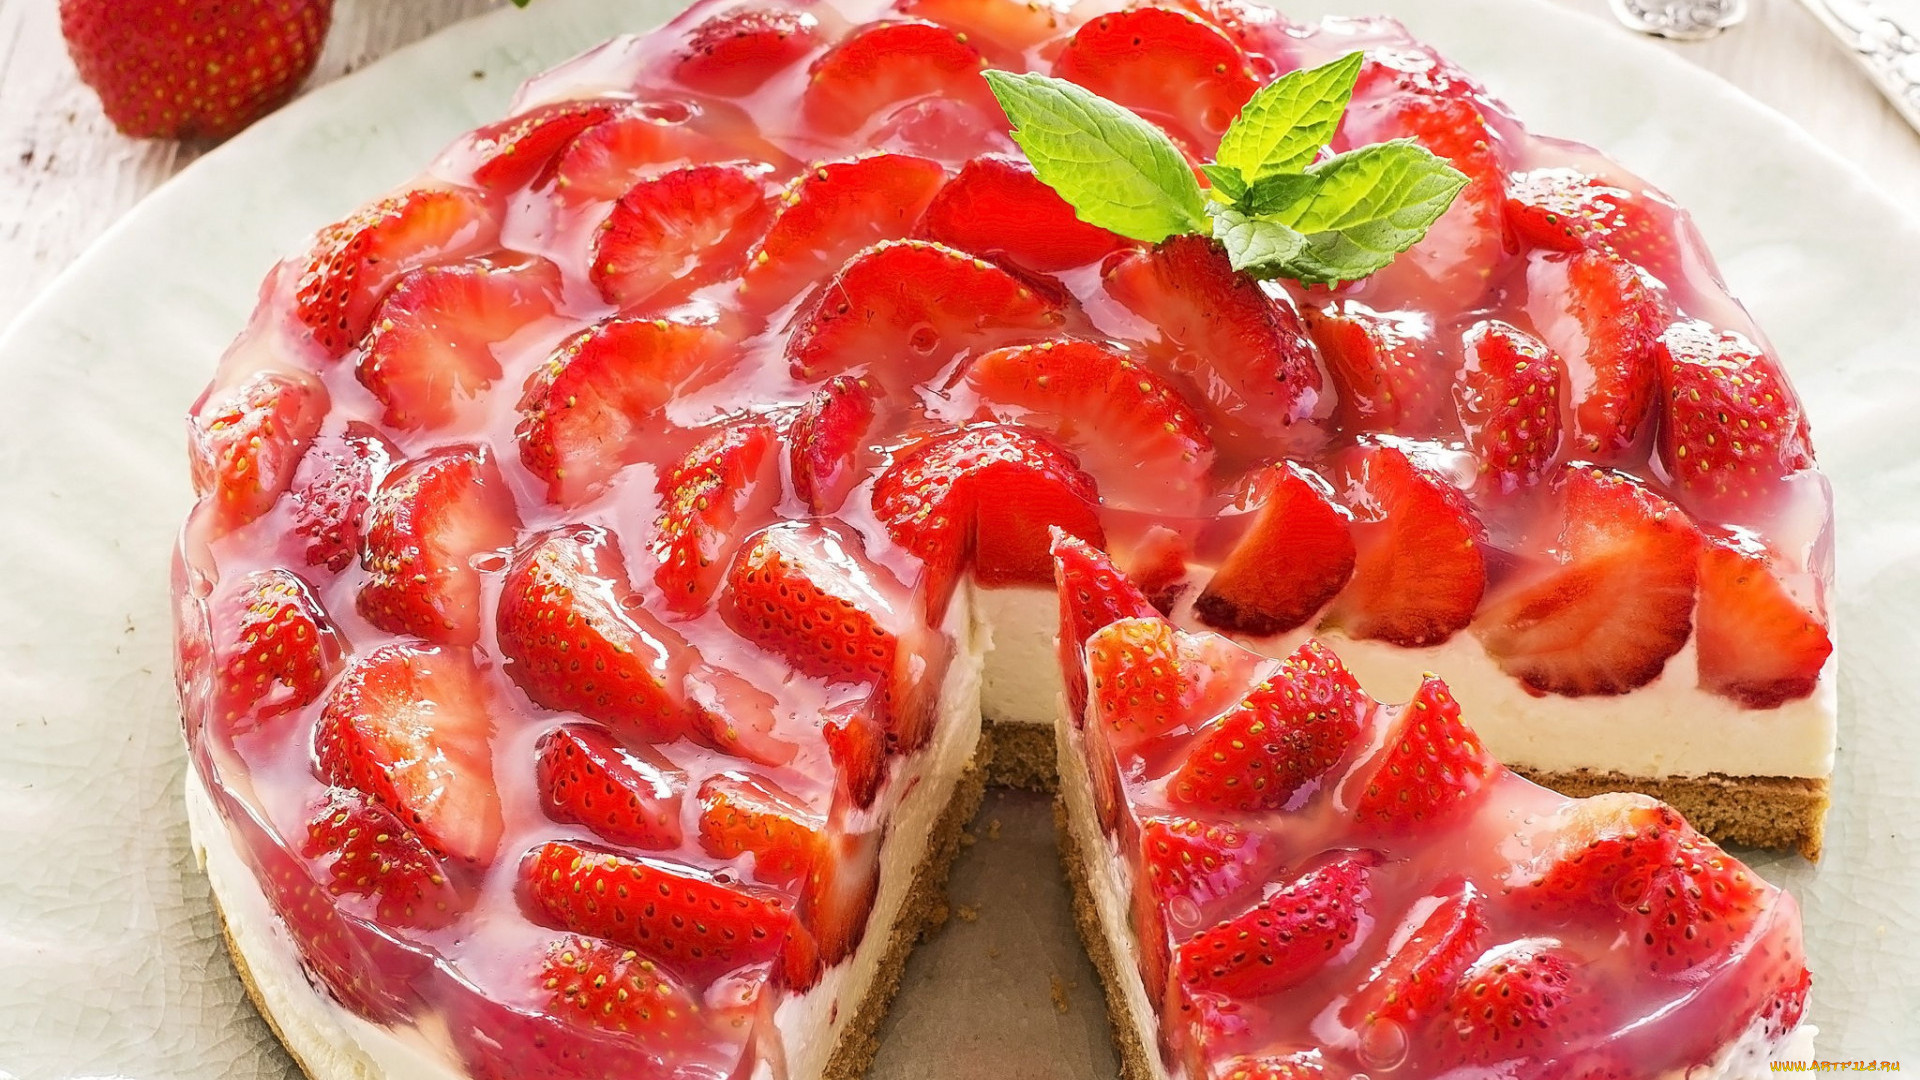 Food Fruit Cake Pie Strawberries Berries Sweets 1920x1080